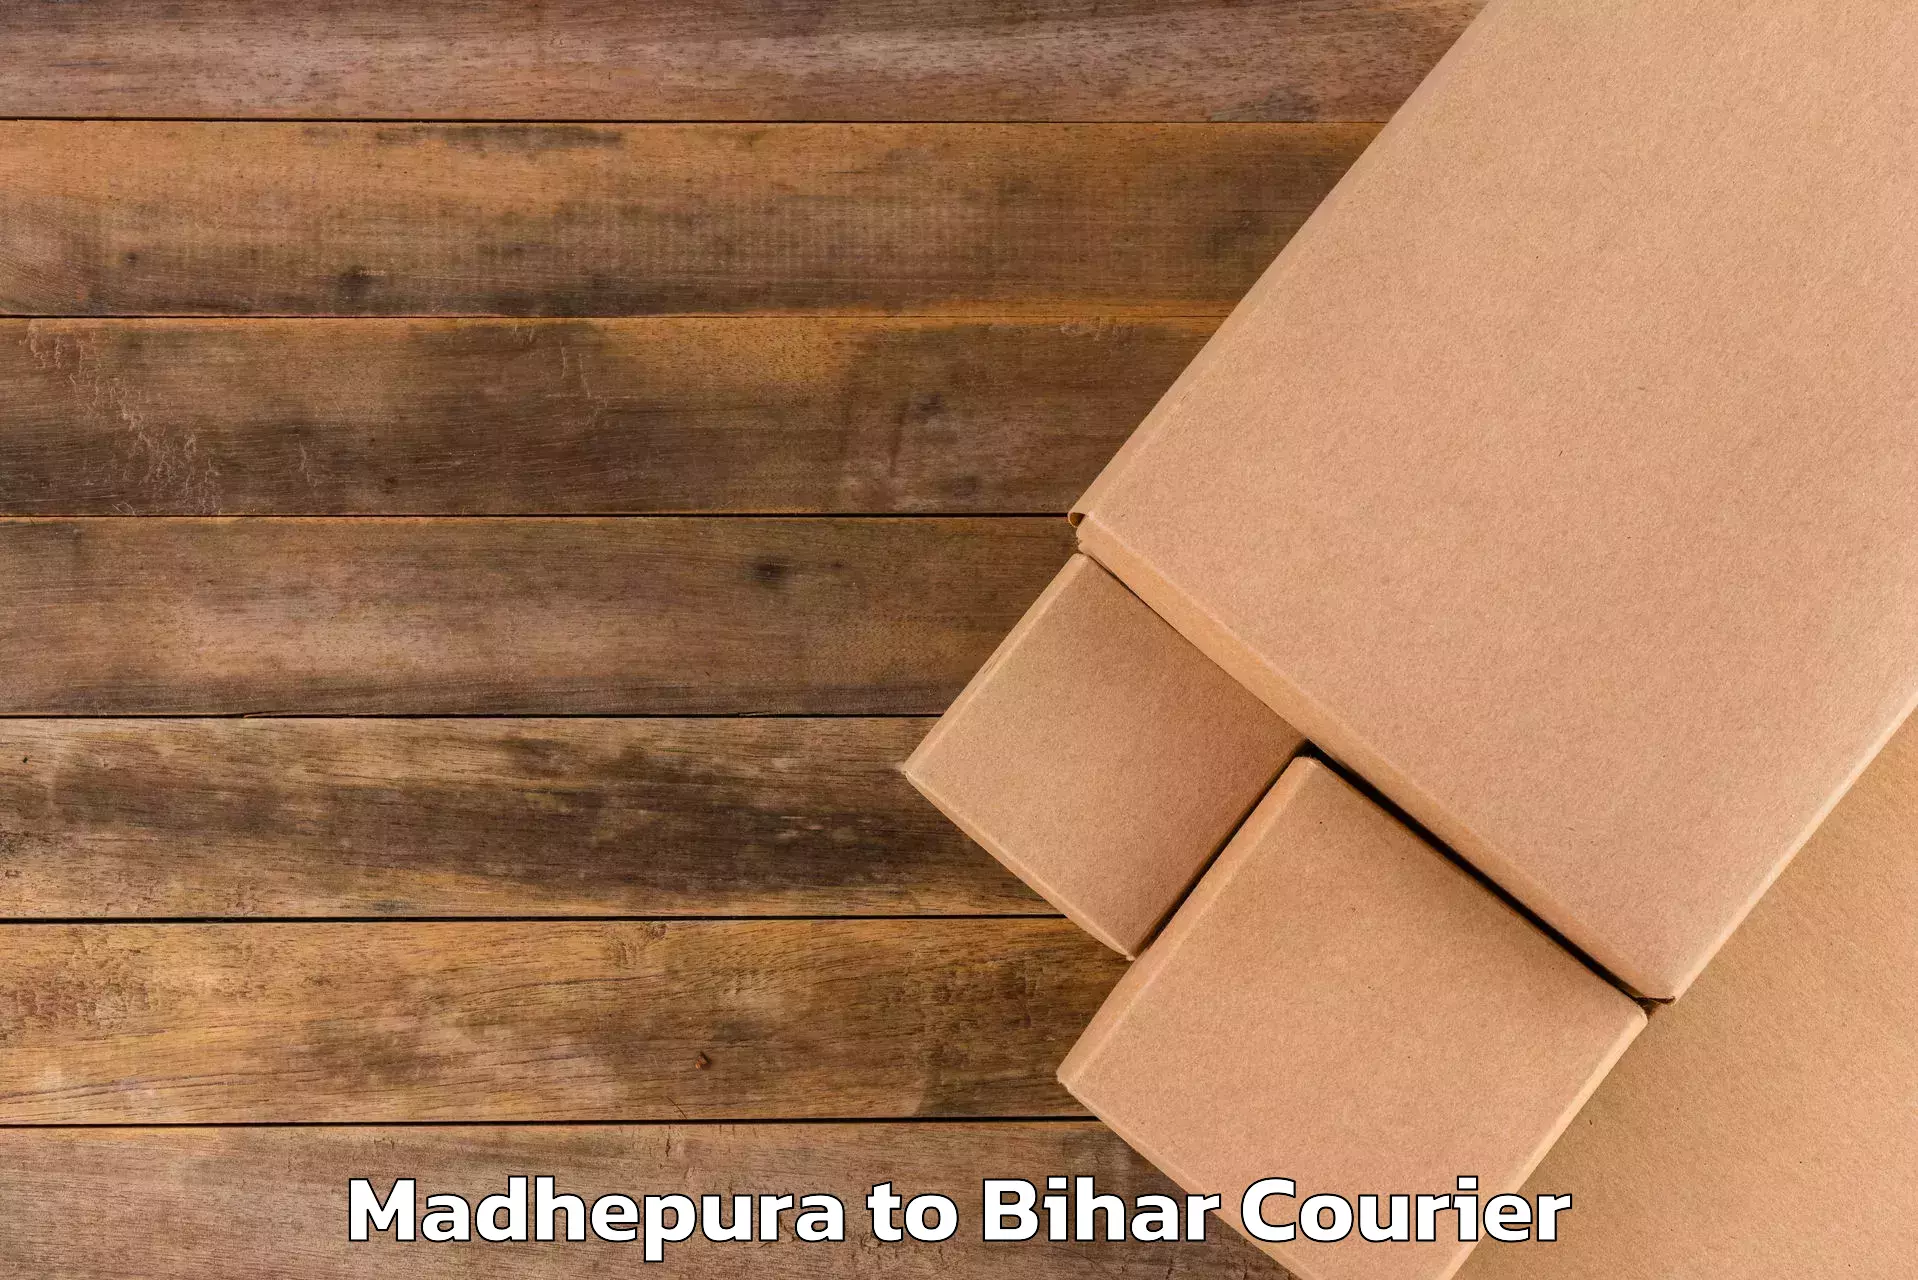 Luggage shipment processing Madhepura to Bhorey